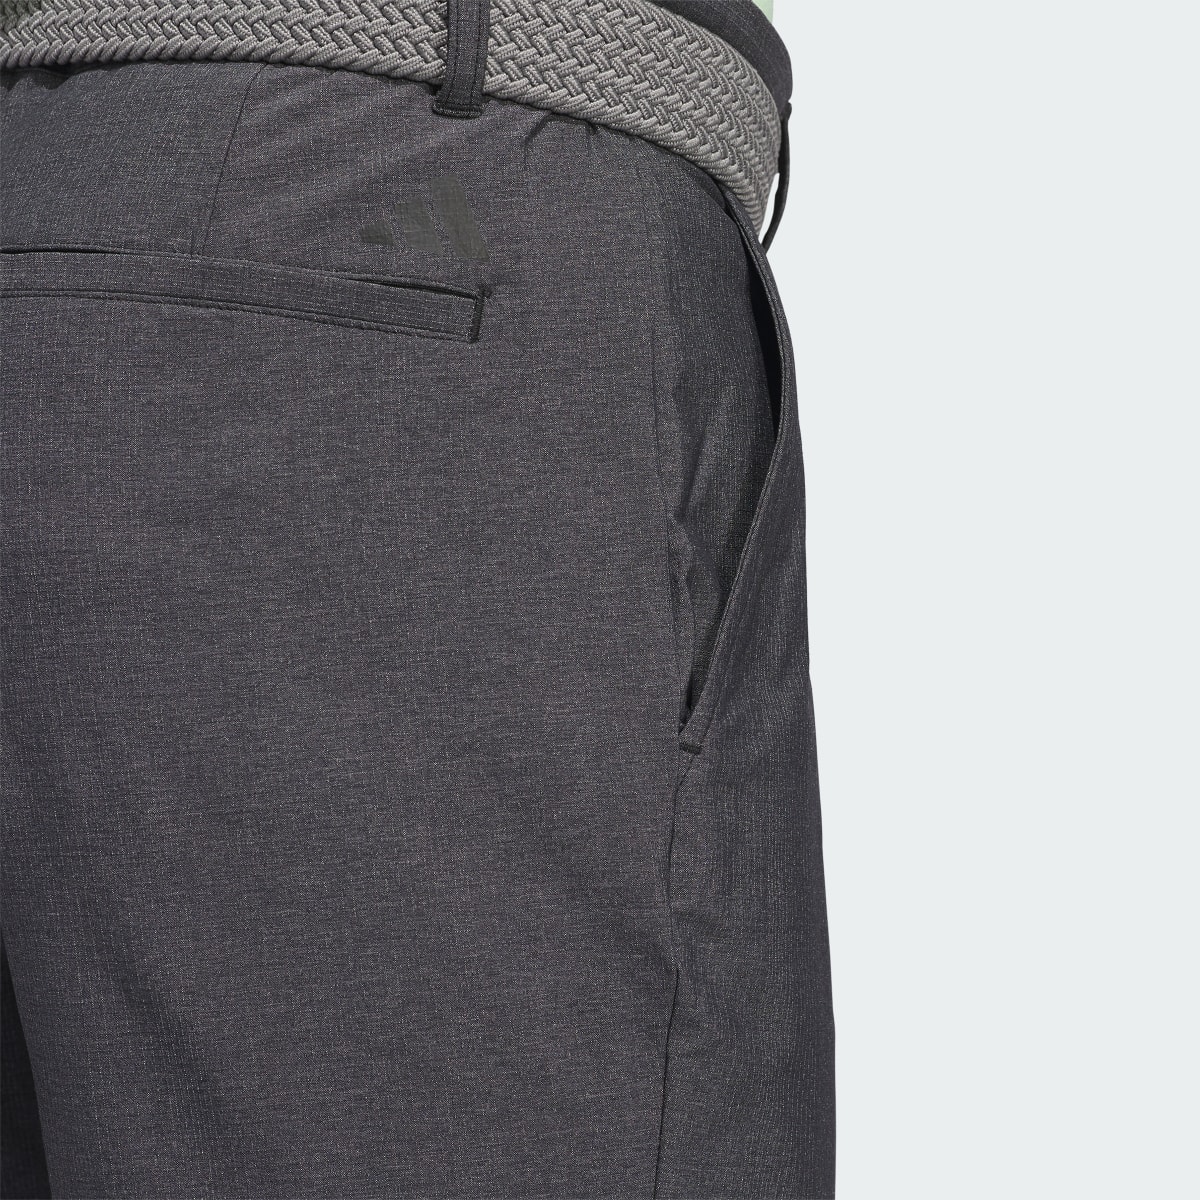 Adidas Ultimate365 Printed Shorts. 5